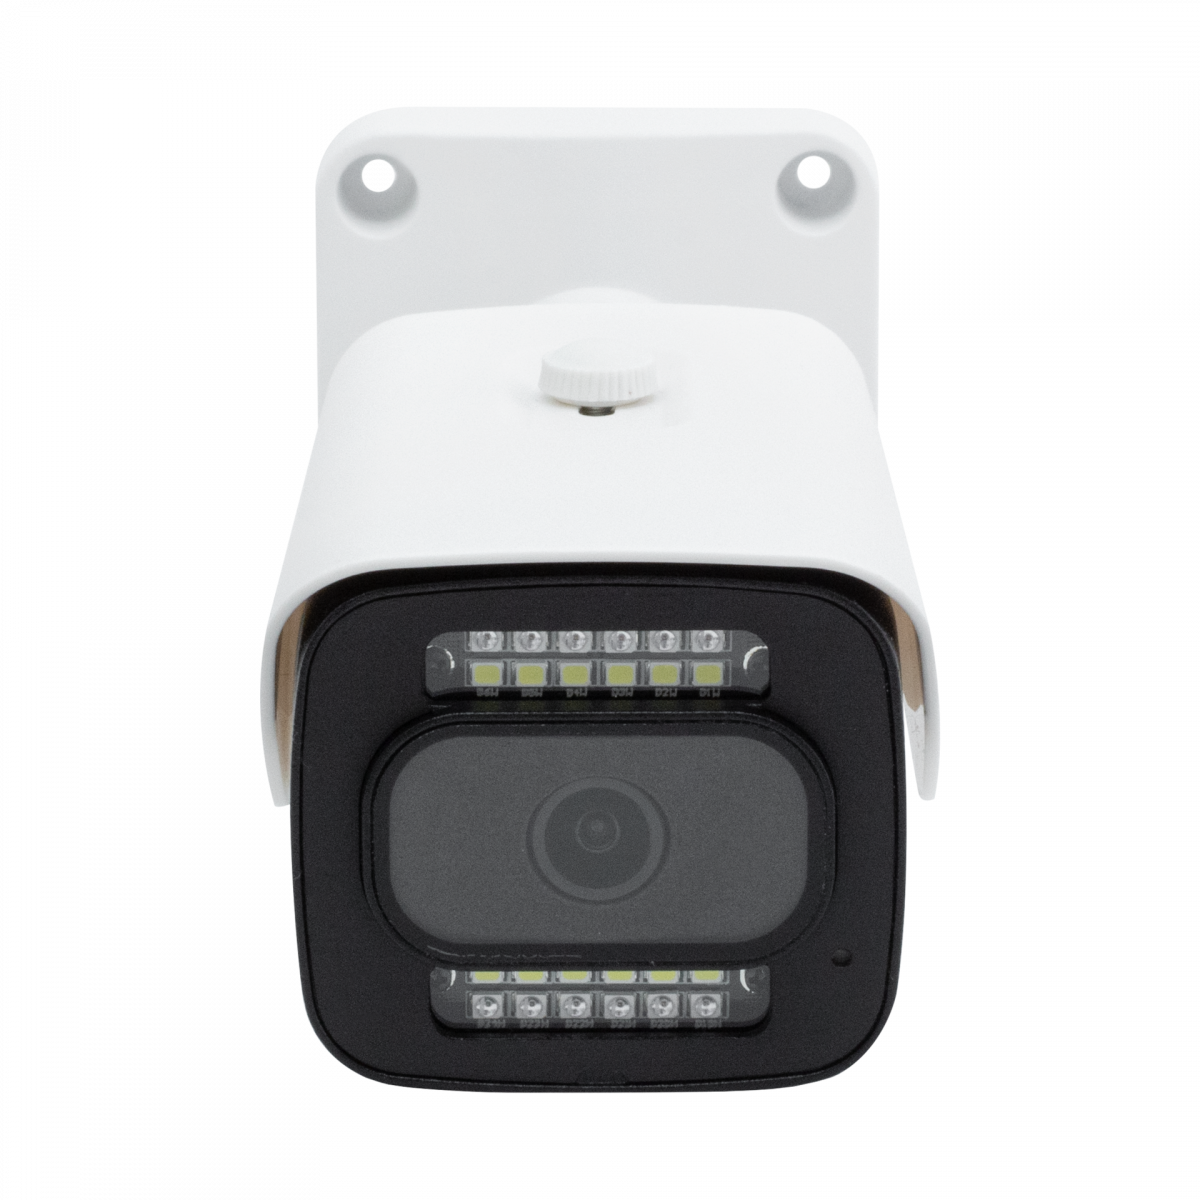 Камера сетевая буллет 5Мп OMNY BASE miniBullet5E-WDS-SDL-C 28 с двойной подсветкой и микрофоном